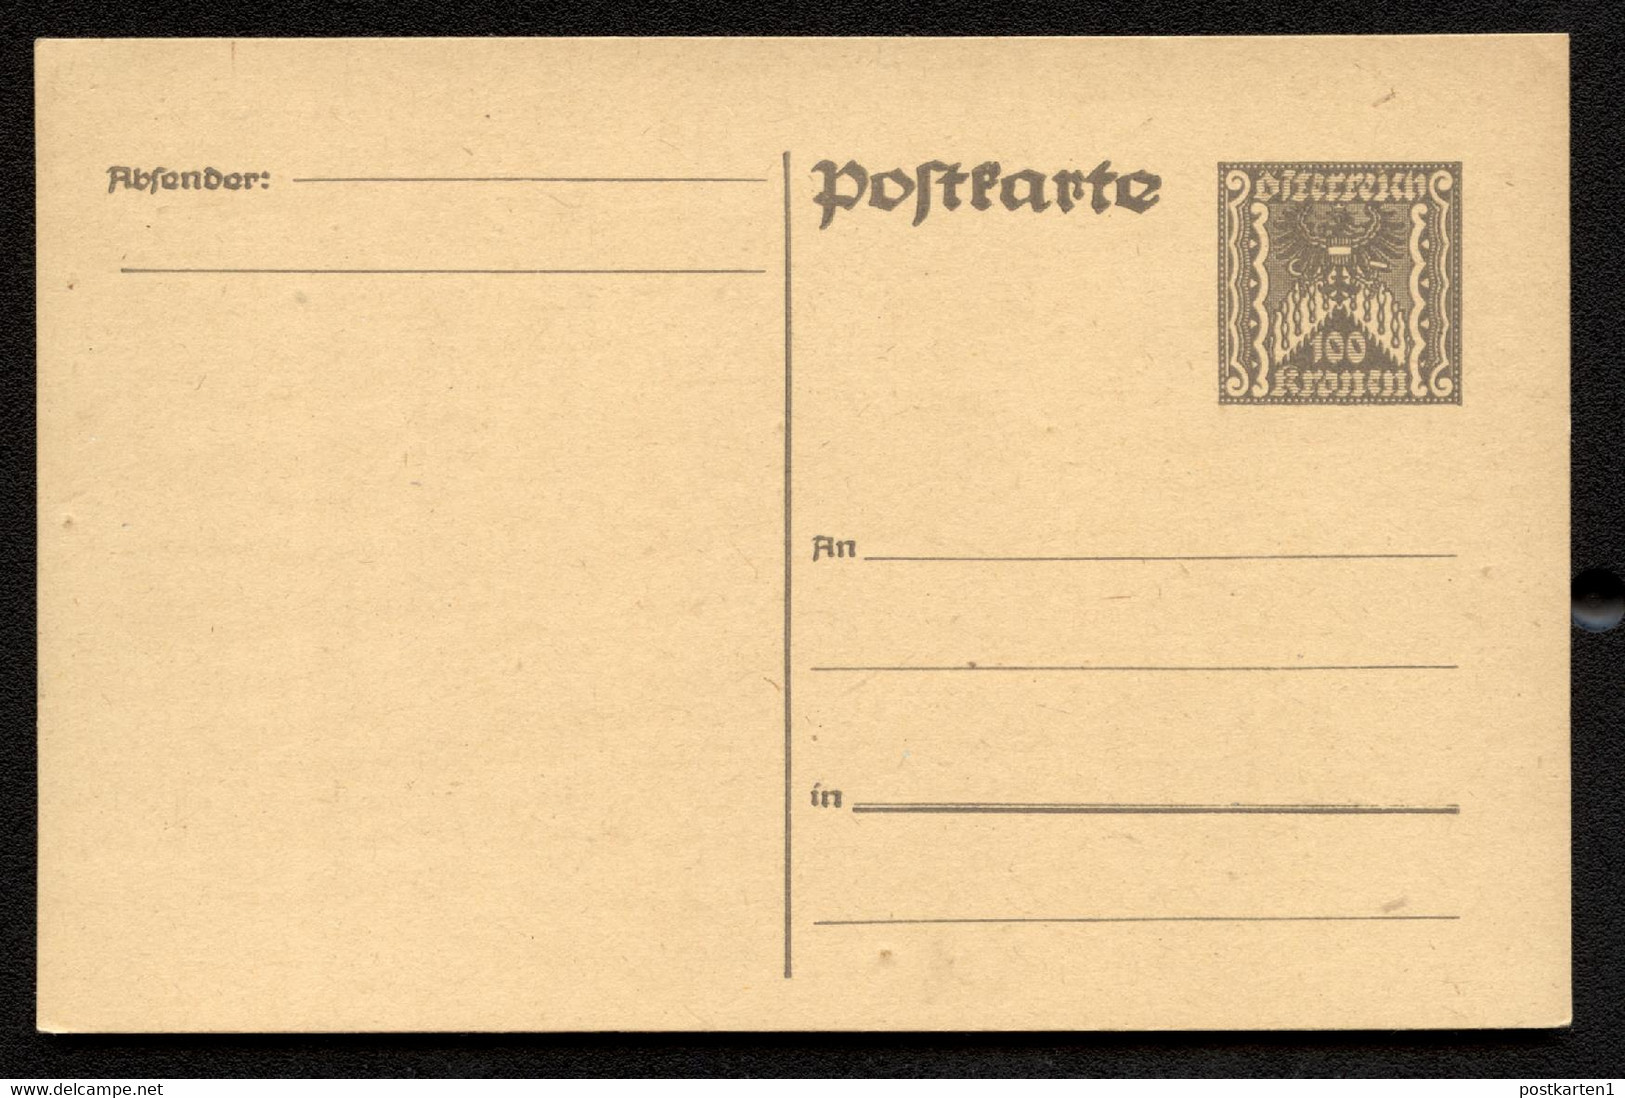 Postkarte P257 Postfrisch Feinst 1922 Kat.20,00 € - Briefkaarten